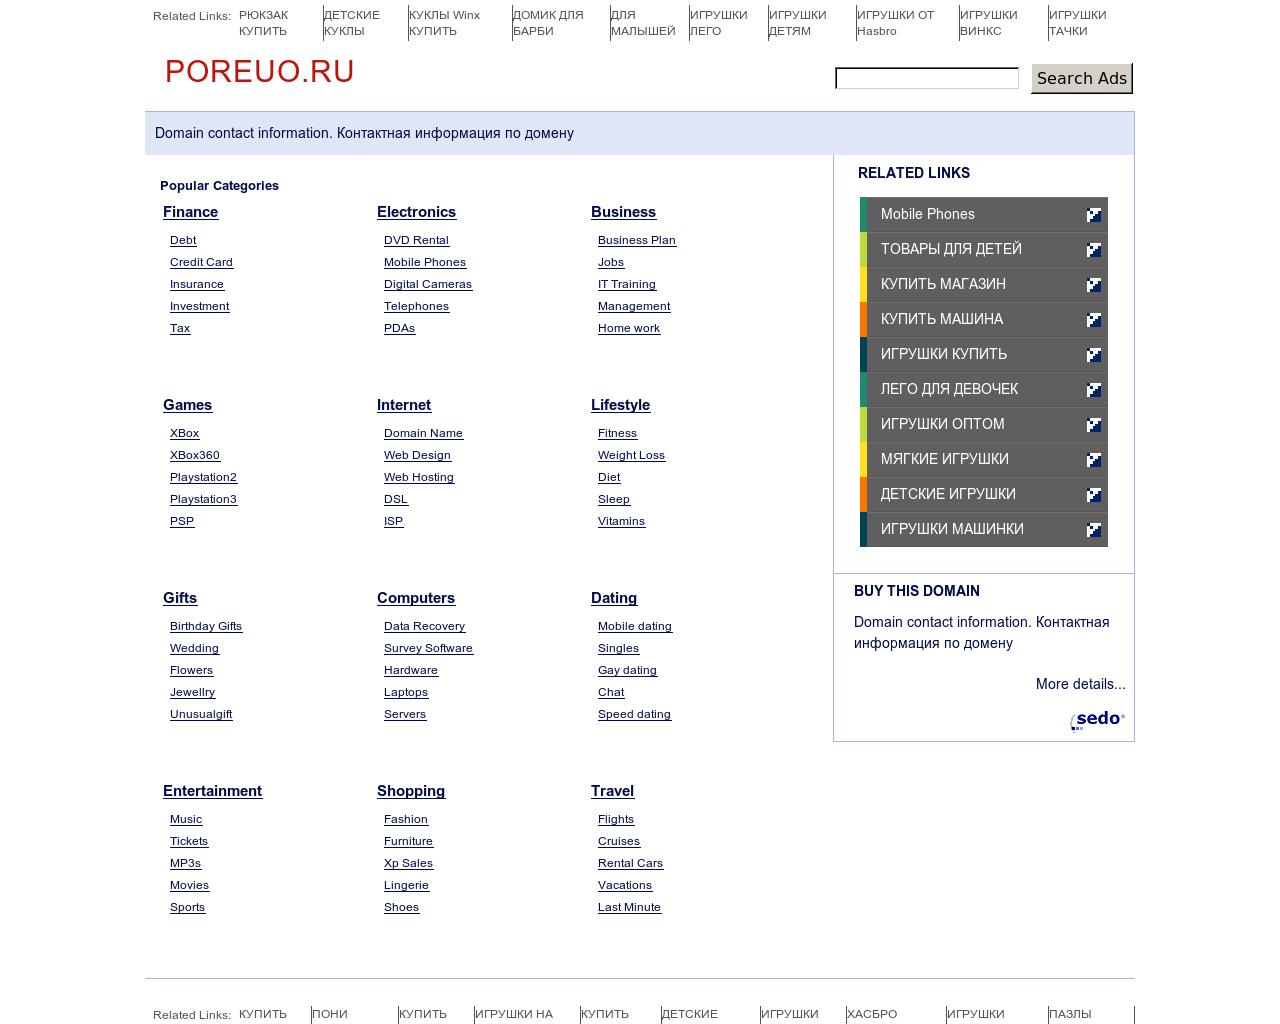 Изображение сайта poreuo.ru в разрешении 1280x1024